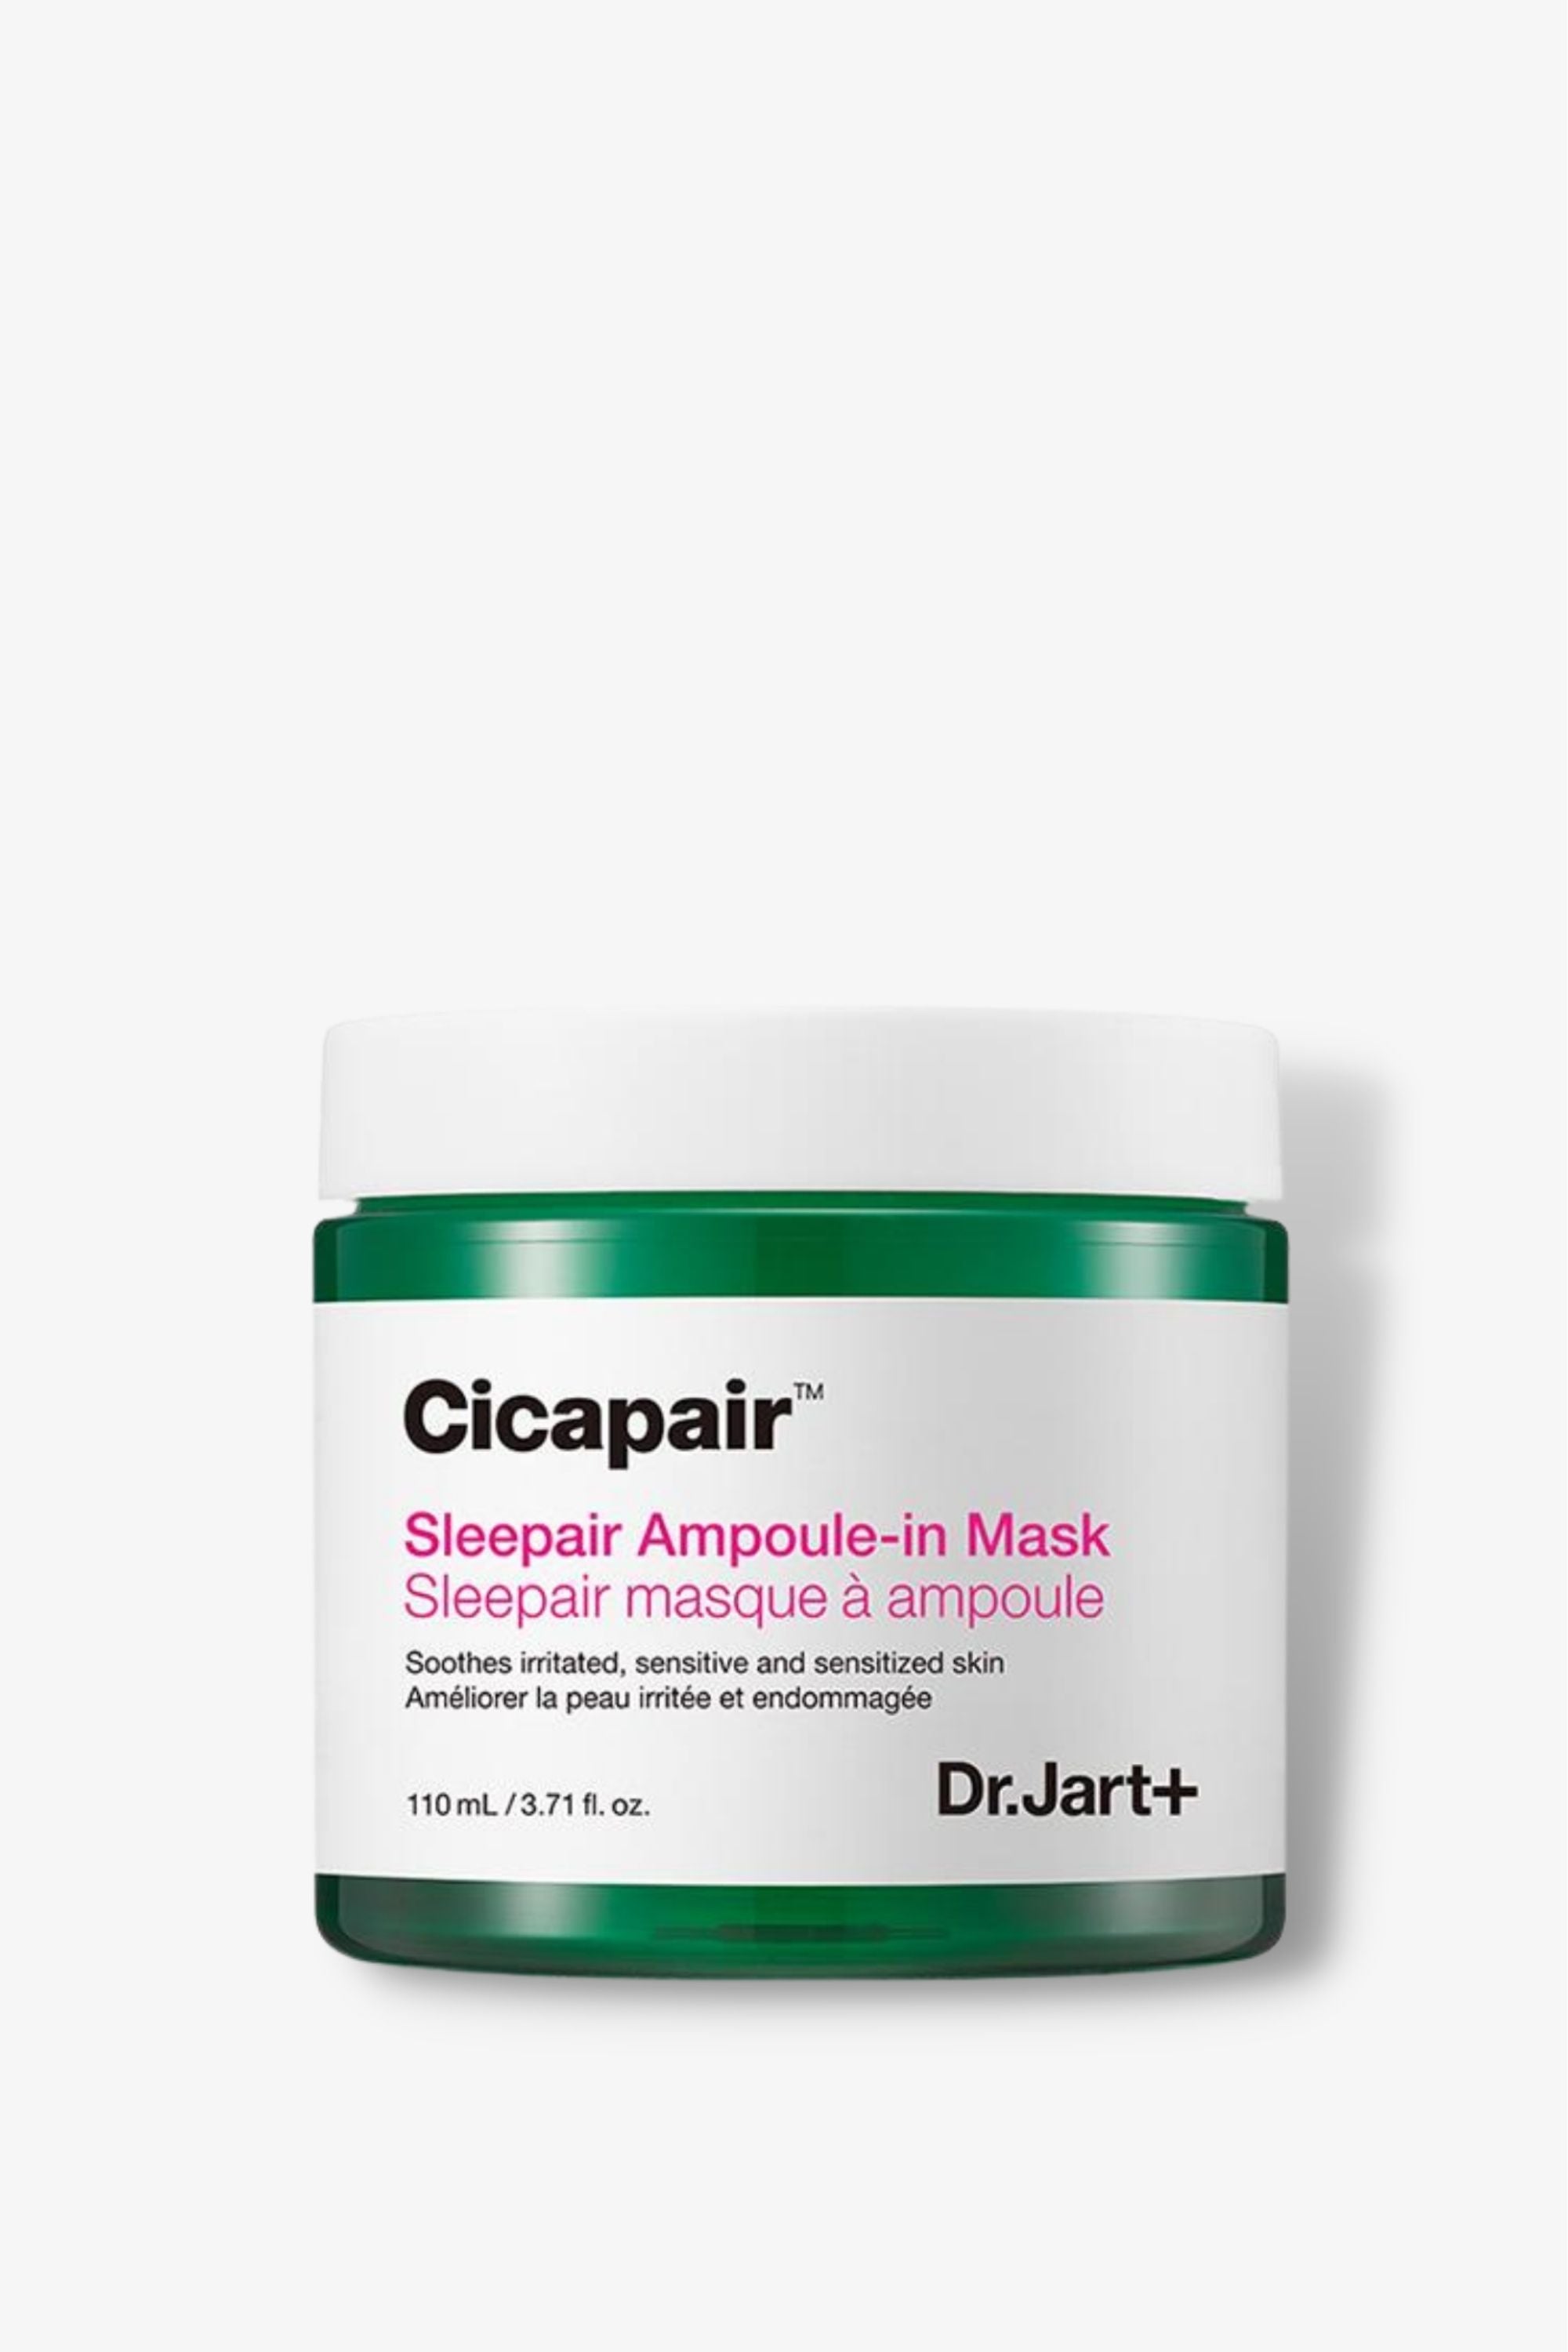 Dr. Jart+ - Cicapair Sleepair Ampoule-In Mask - 110ml